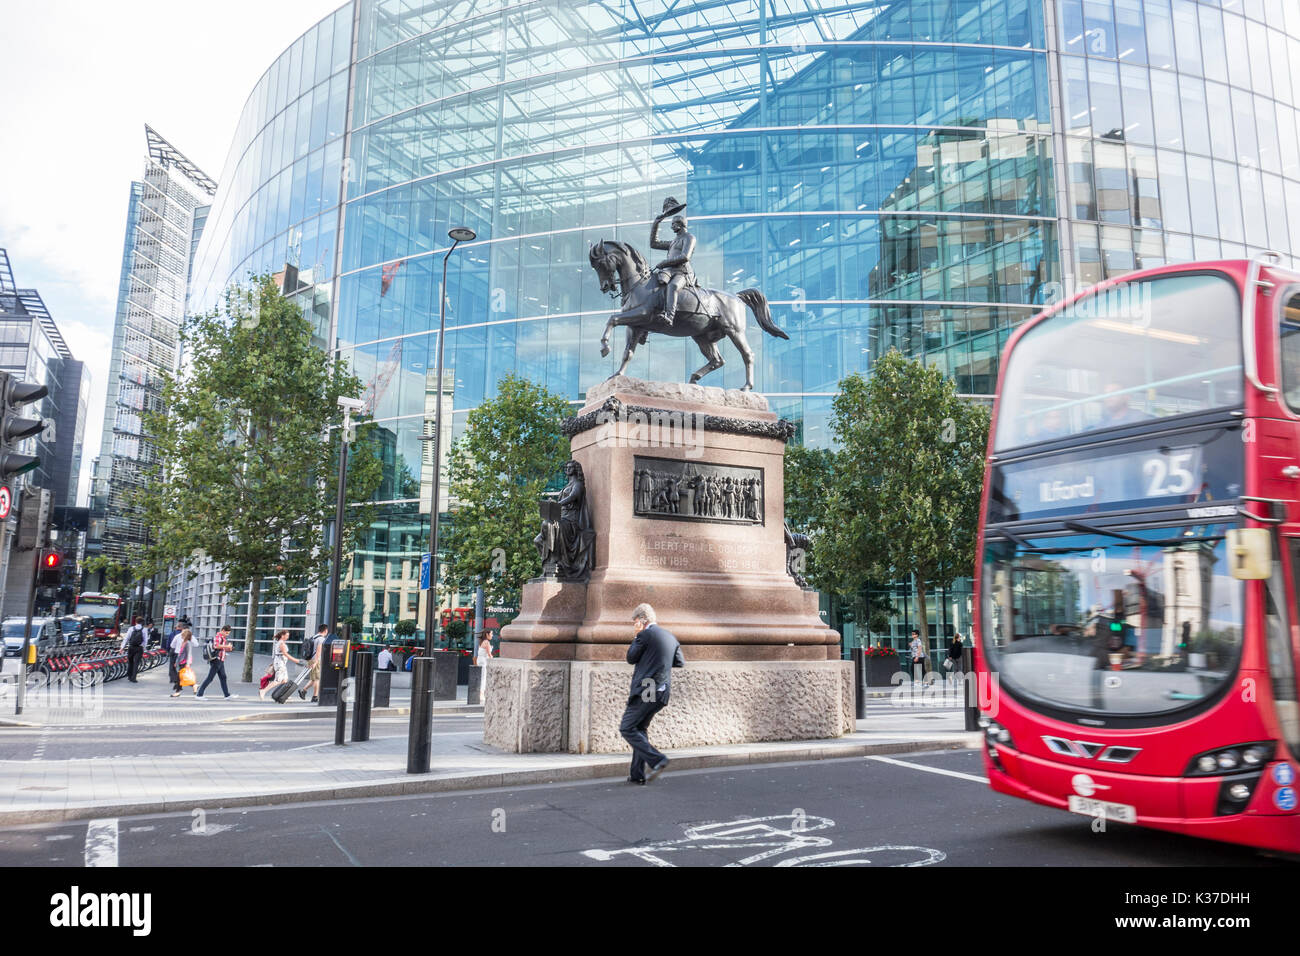 Prince Albert Statue équestre en face de Sainsbury's Holborn 33 siège social. Holborn Circus, Ville de London, UK Banque D'Images